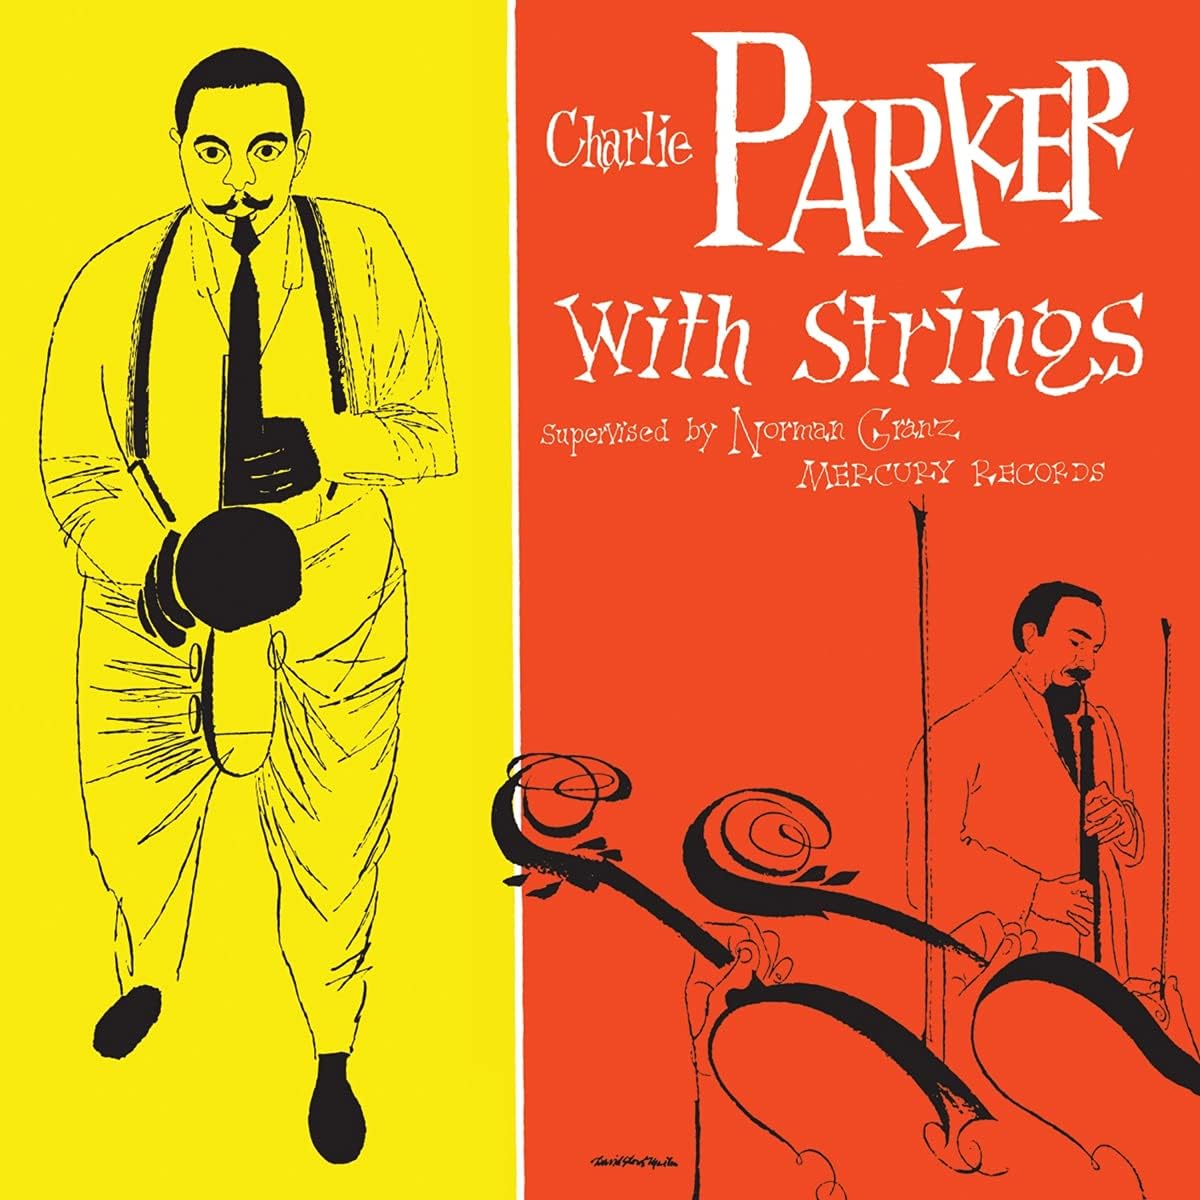 Charlie Parker - Charlie Parker with strings (Vinile 180gr.)